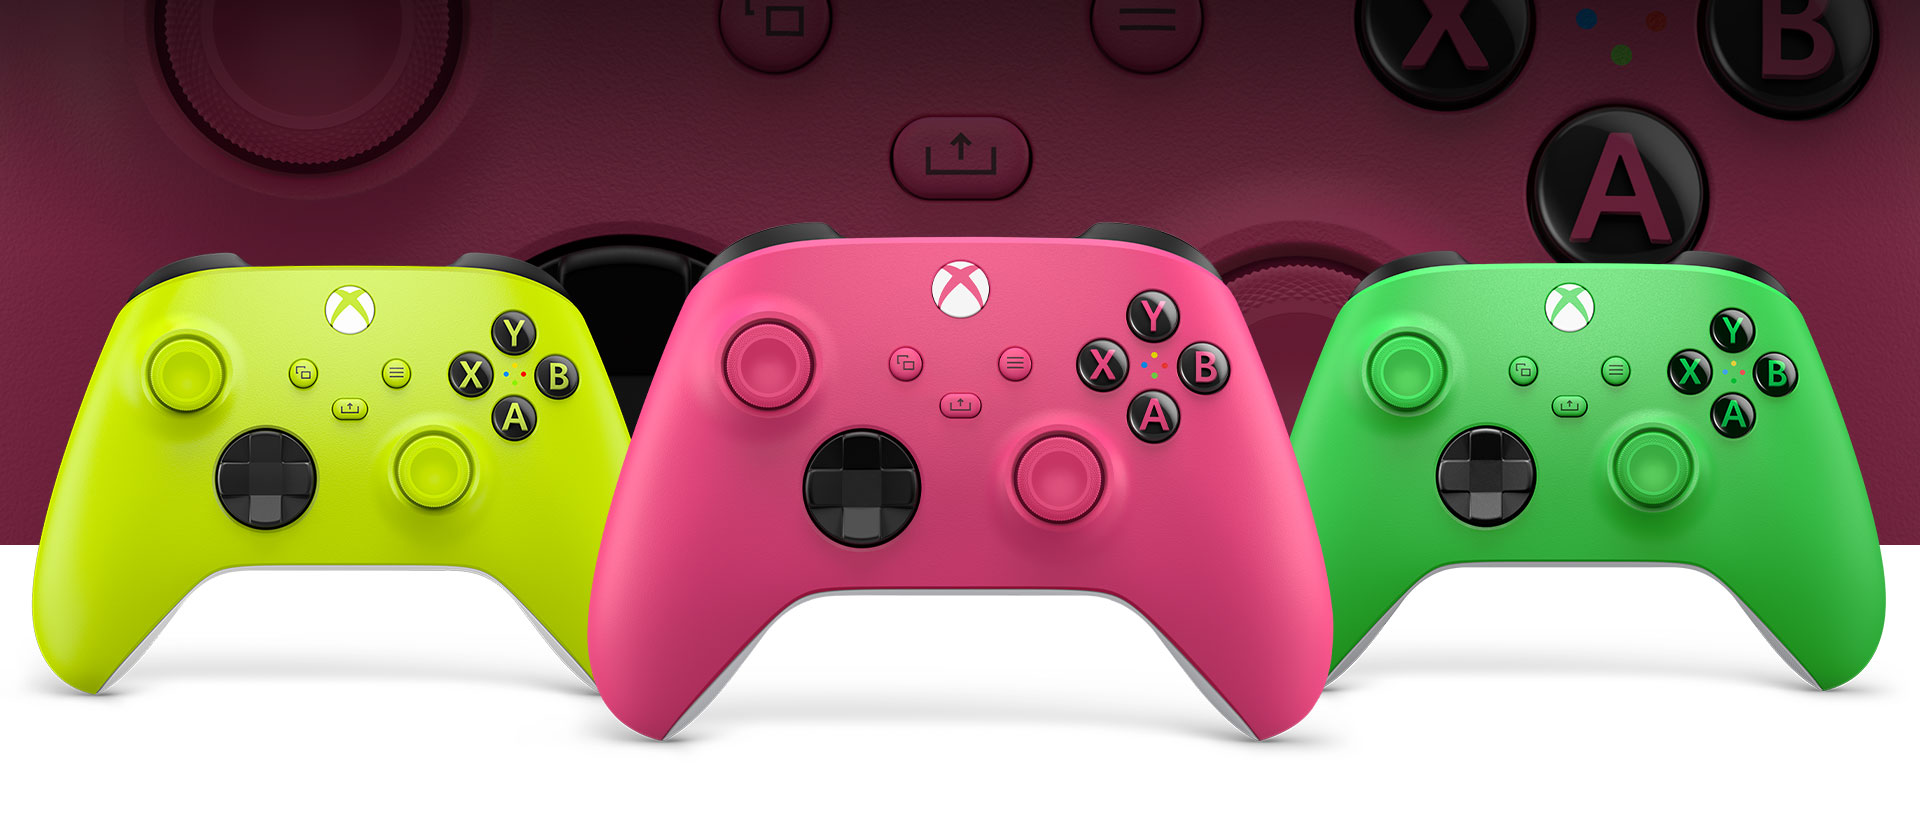 Xbox 粉紅色控制器在前方，左側是黃綠色控制器，右側是綠色控制器